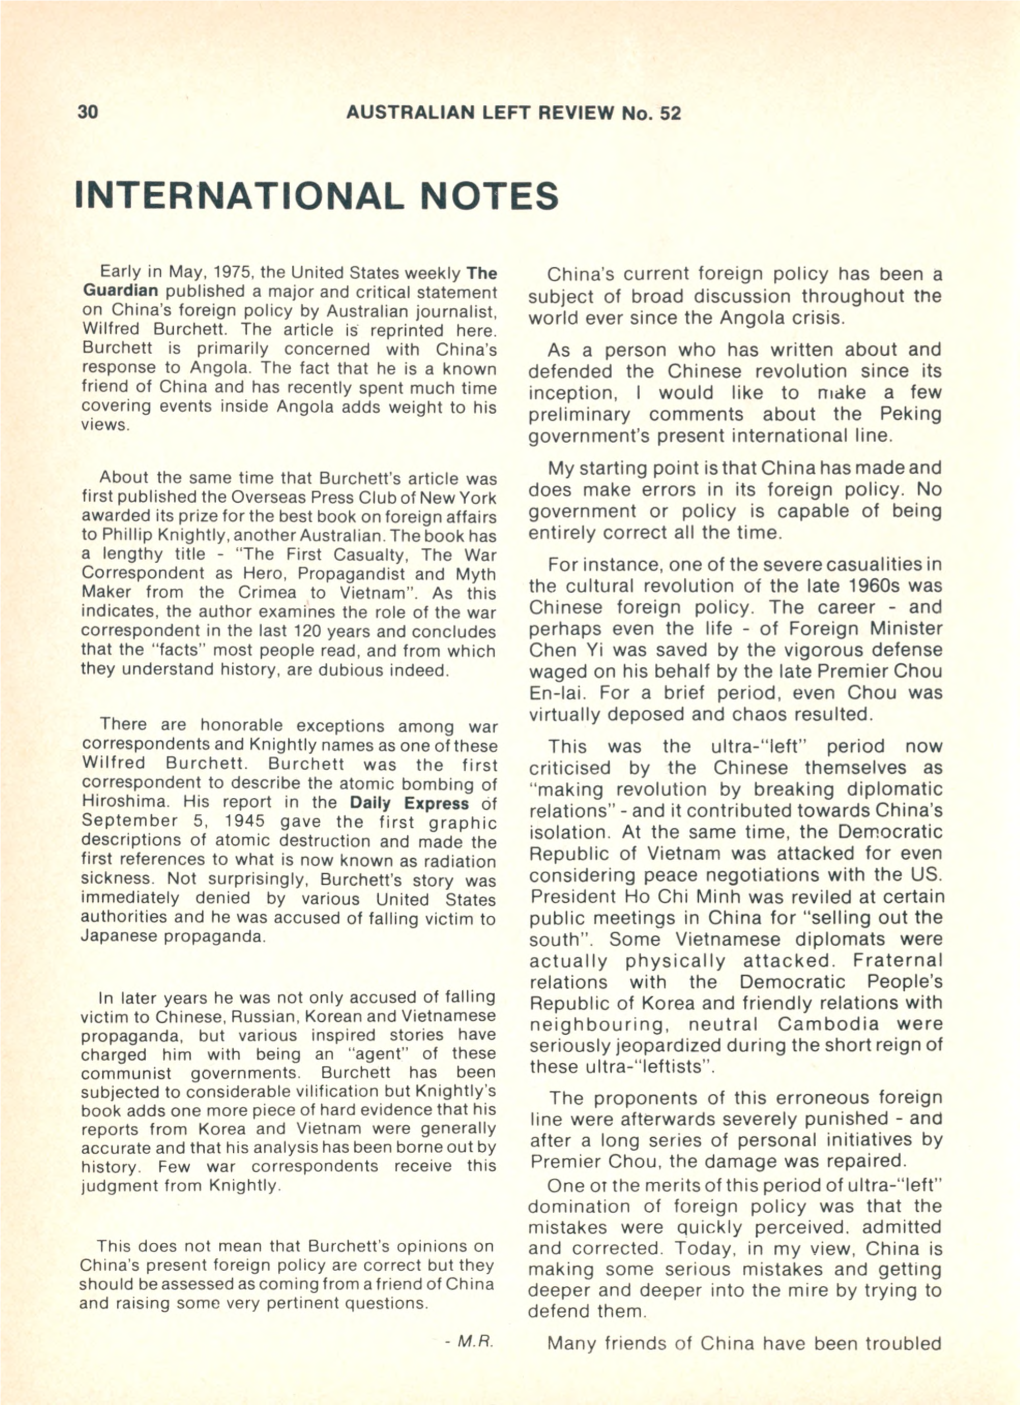 International Notes: ALR 52